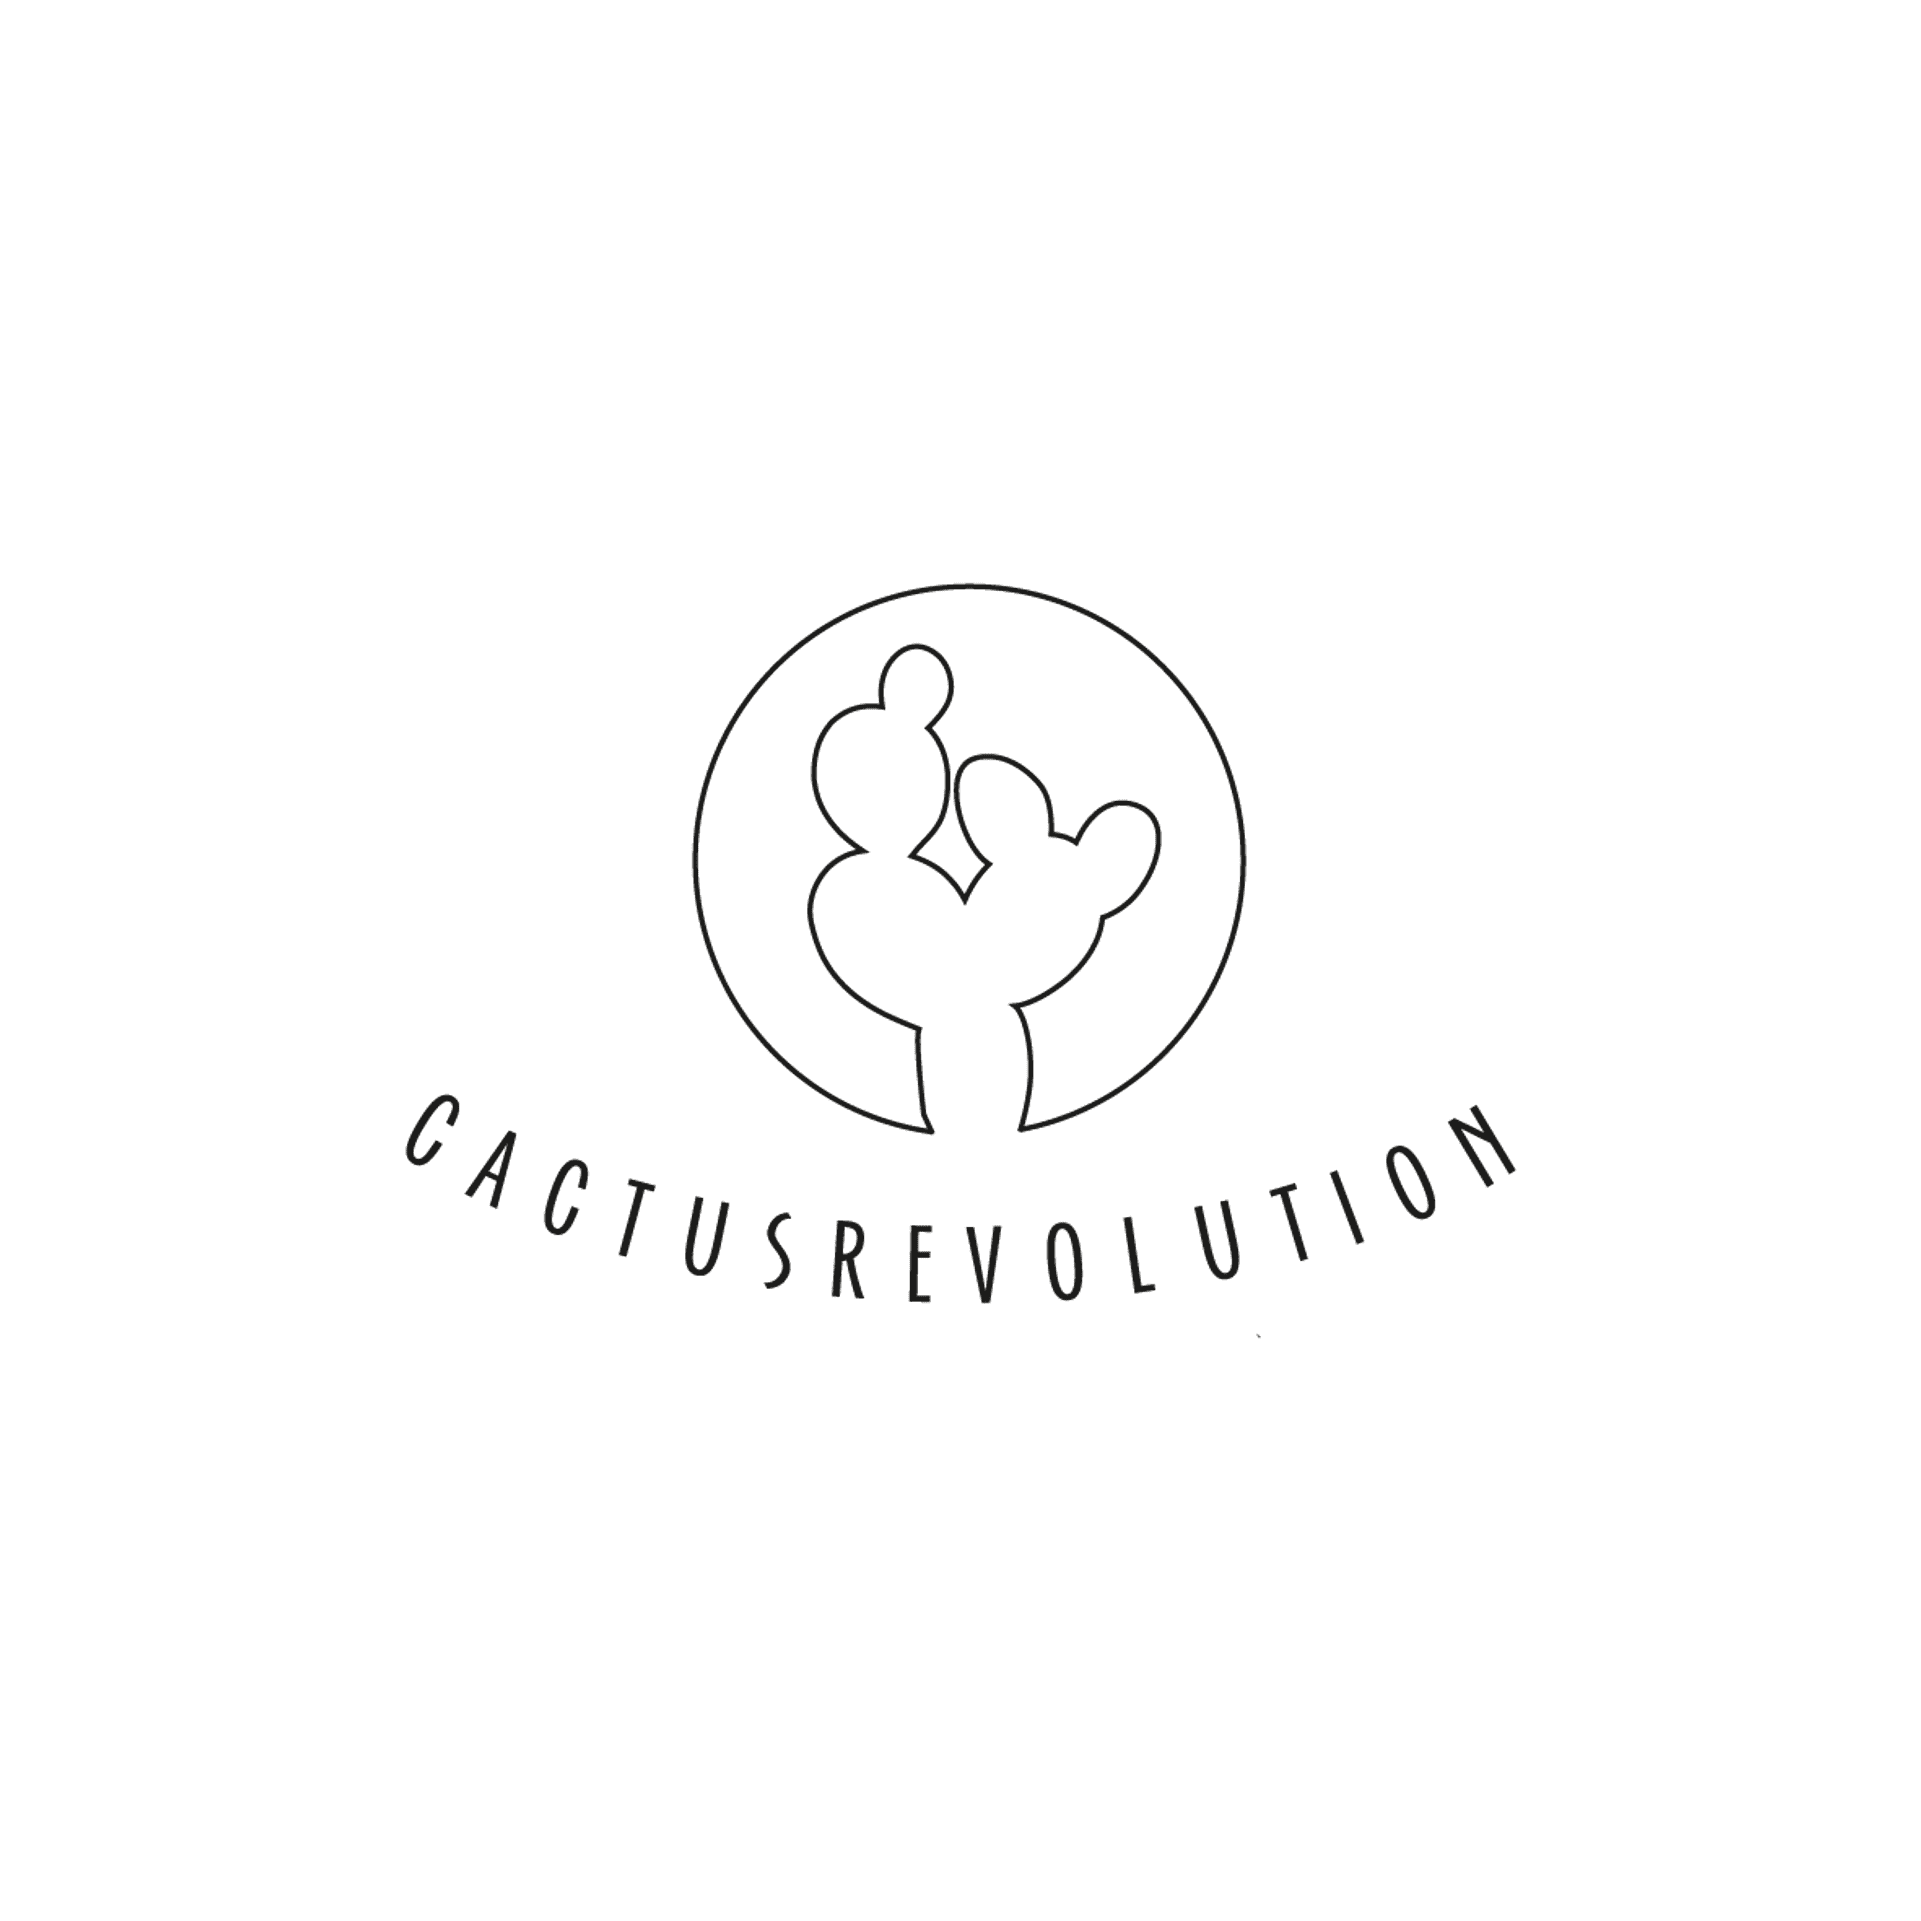 cibiartisti, cactusrevolution associazione 